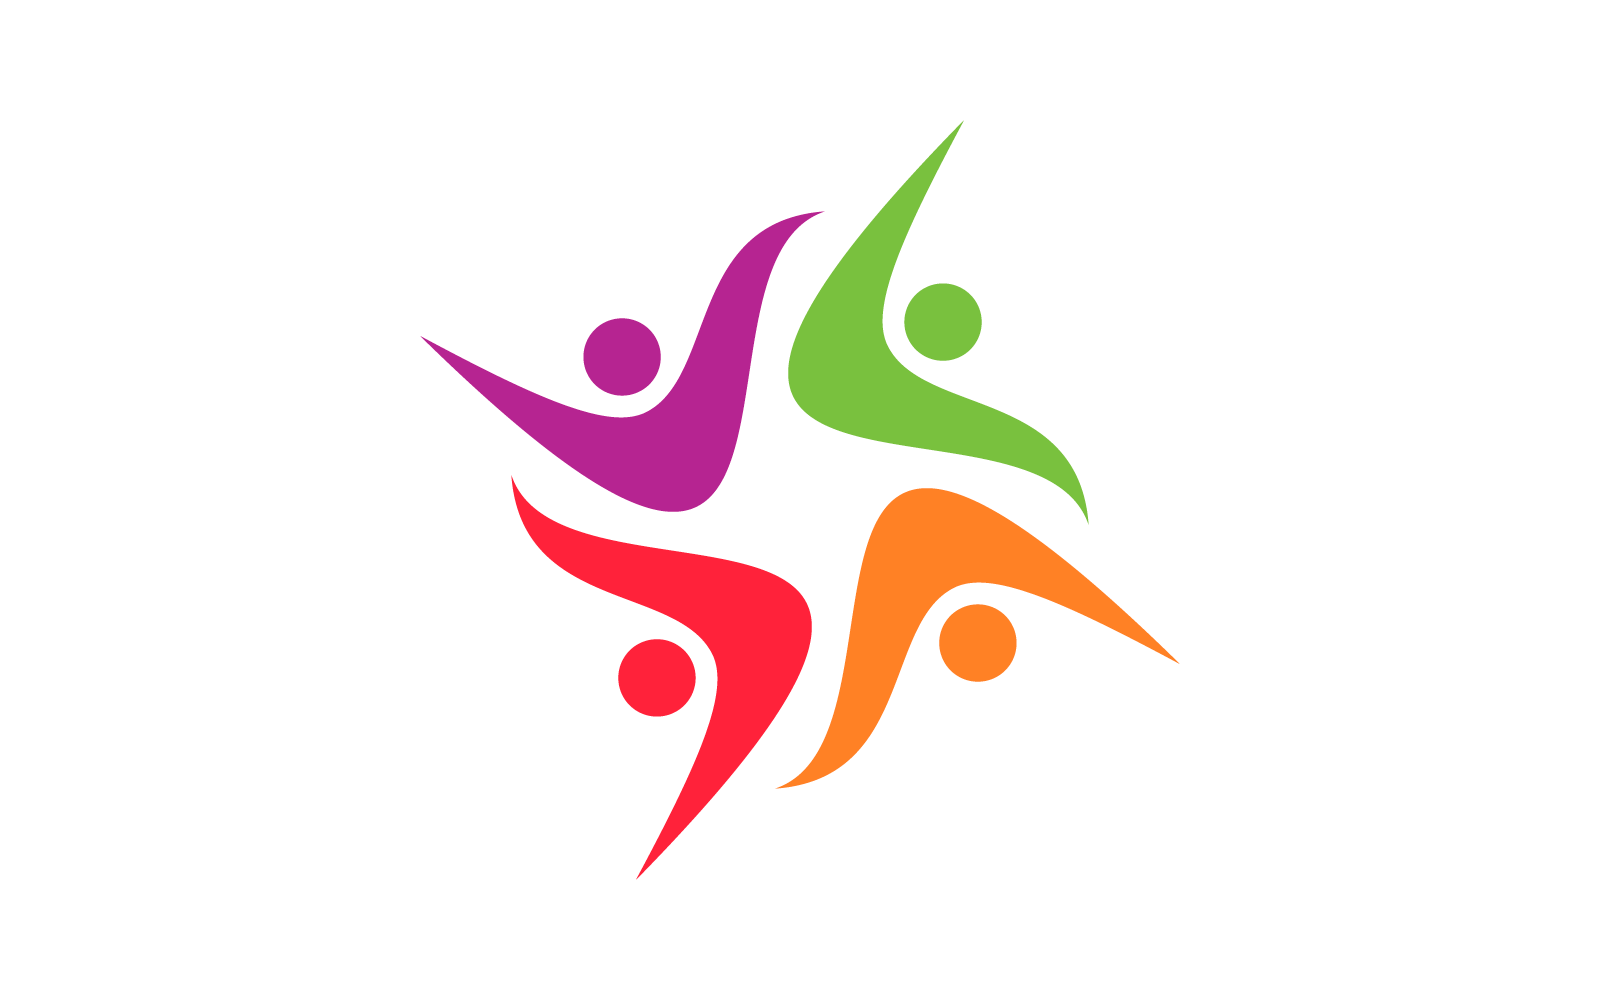 Gemeenschaps- en sociaal logo plat ontwerp